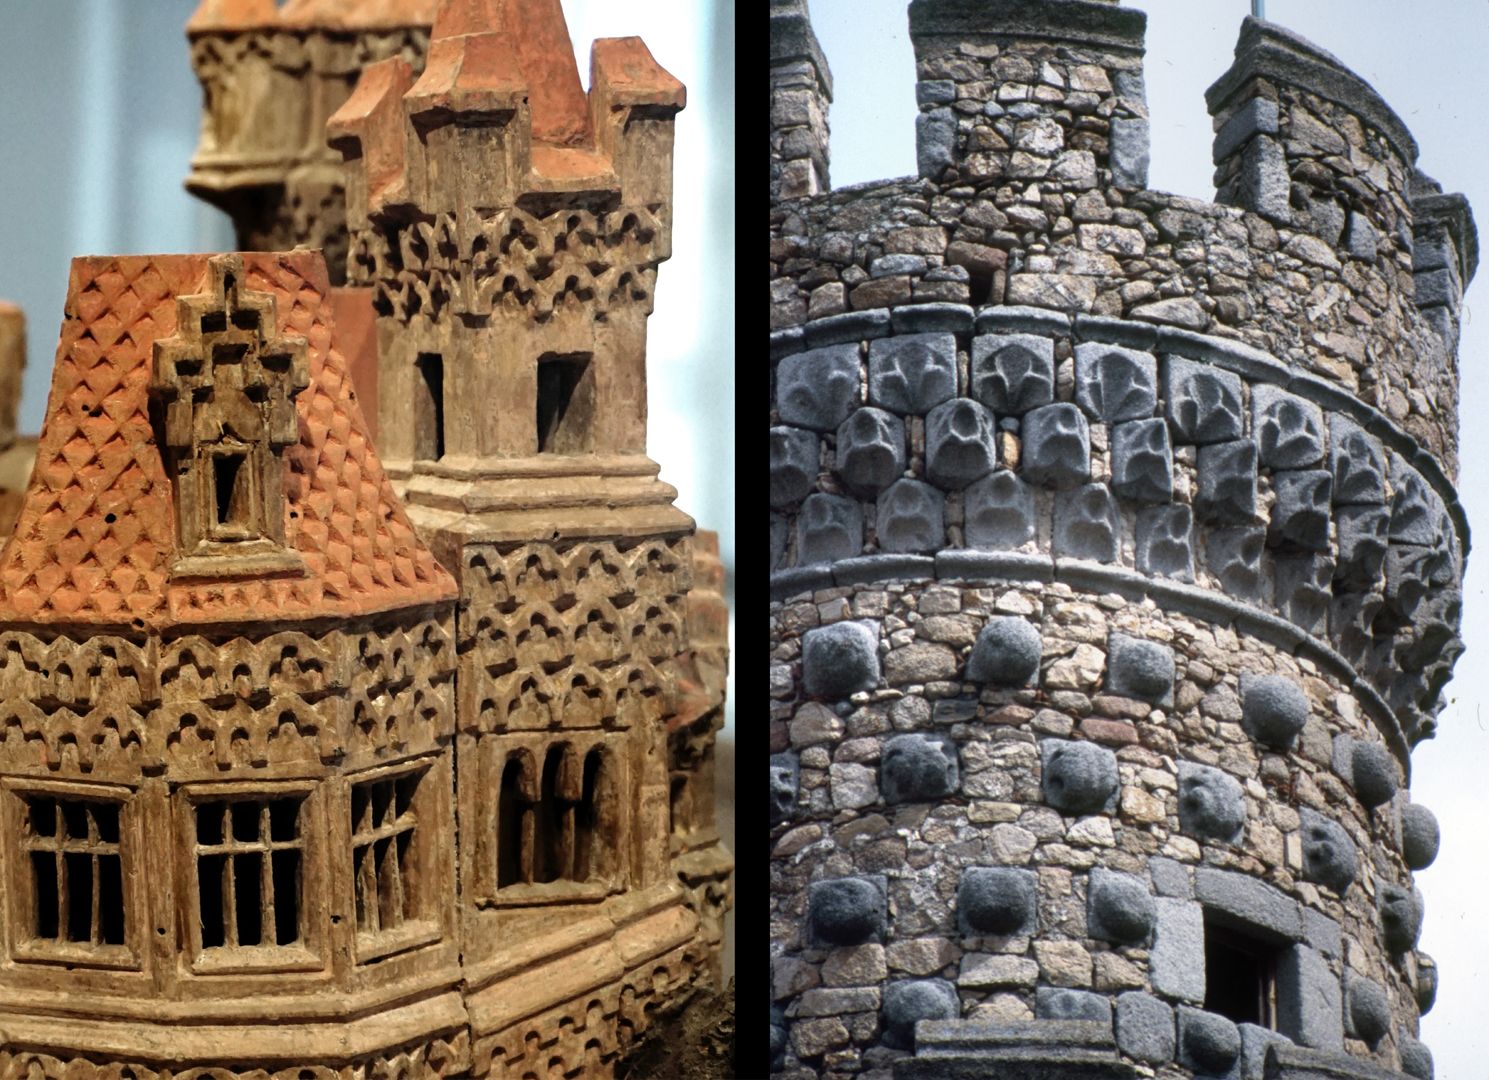 Modell einer Ritterburg Vergleich, Burgmodell und Turmdetail der Burg Real de Manzanares (nahe Madrid)